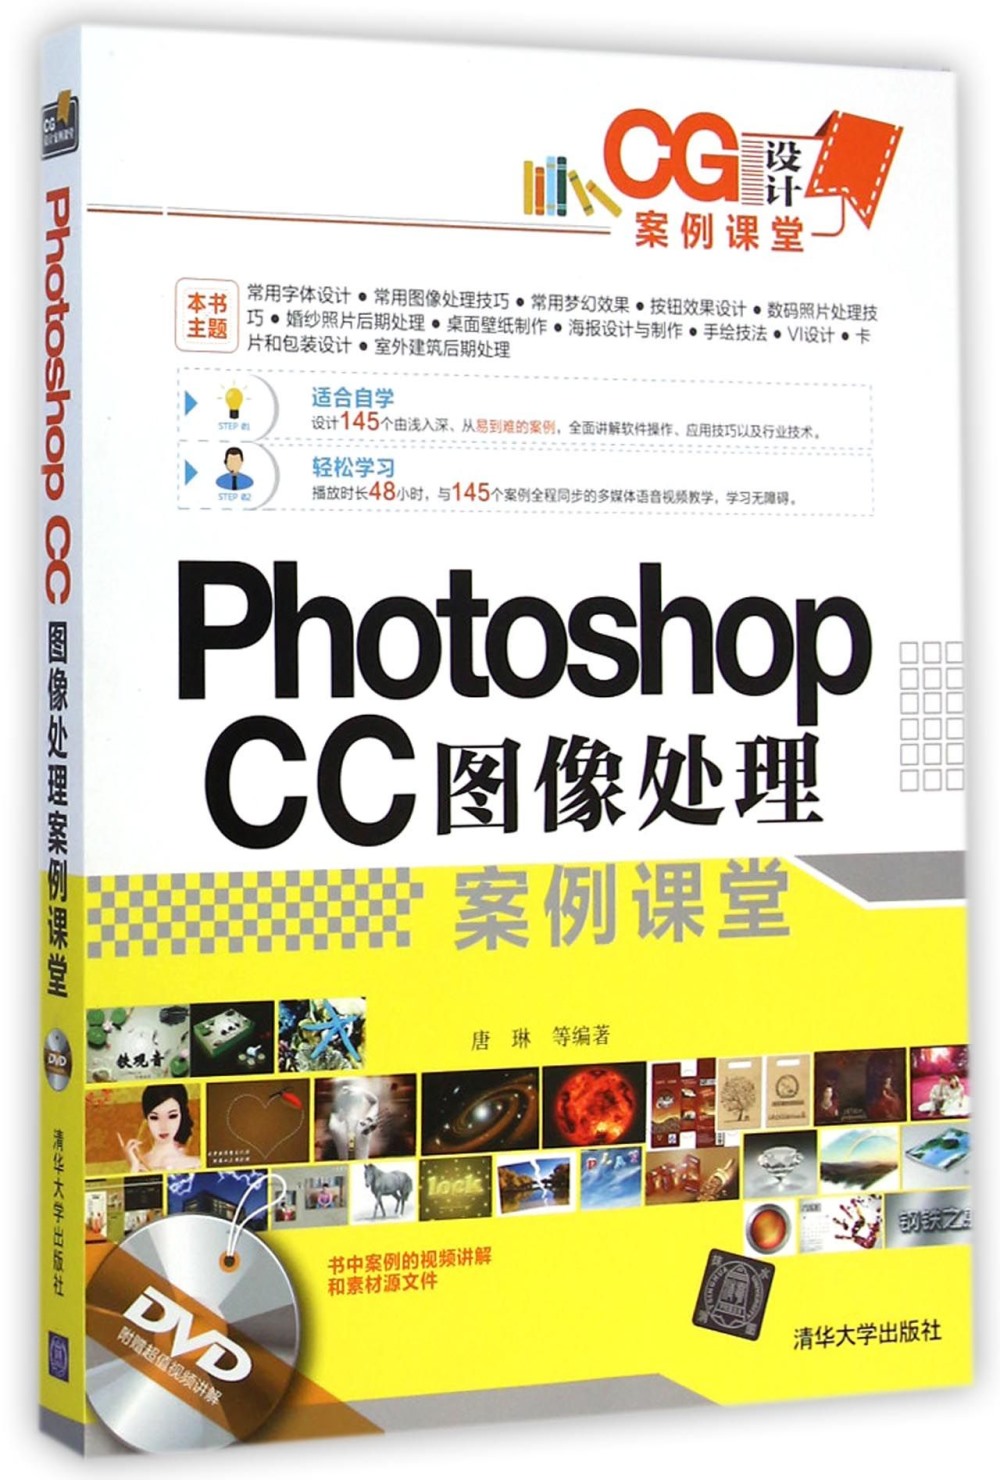 Photoshop CC圖像處理案例課堂